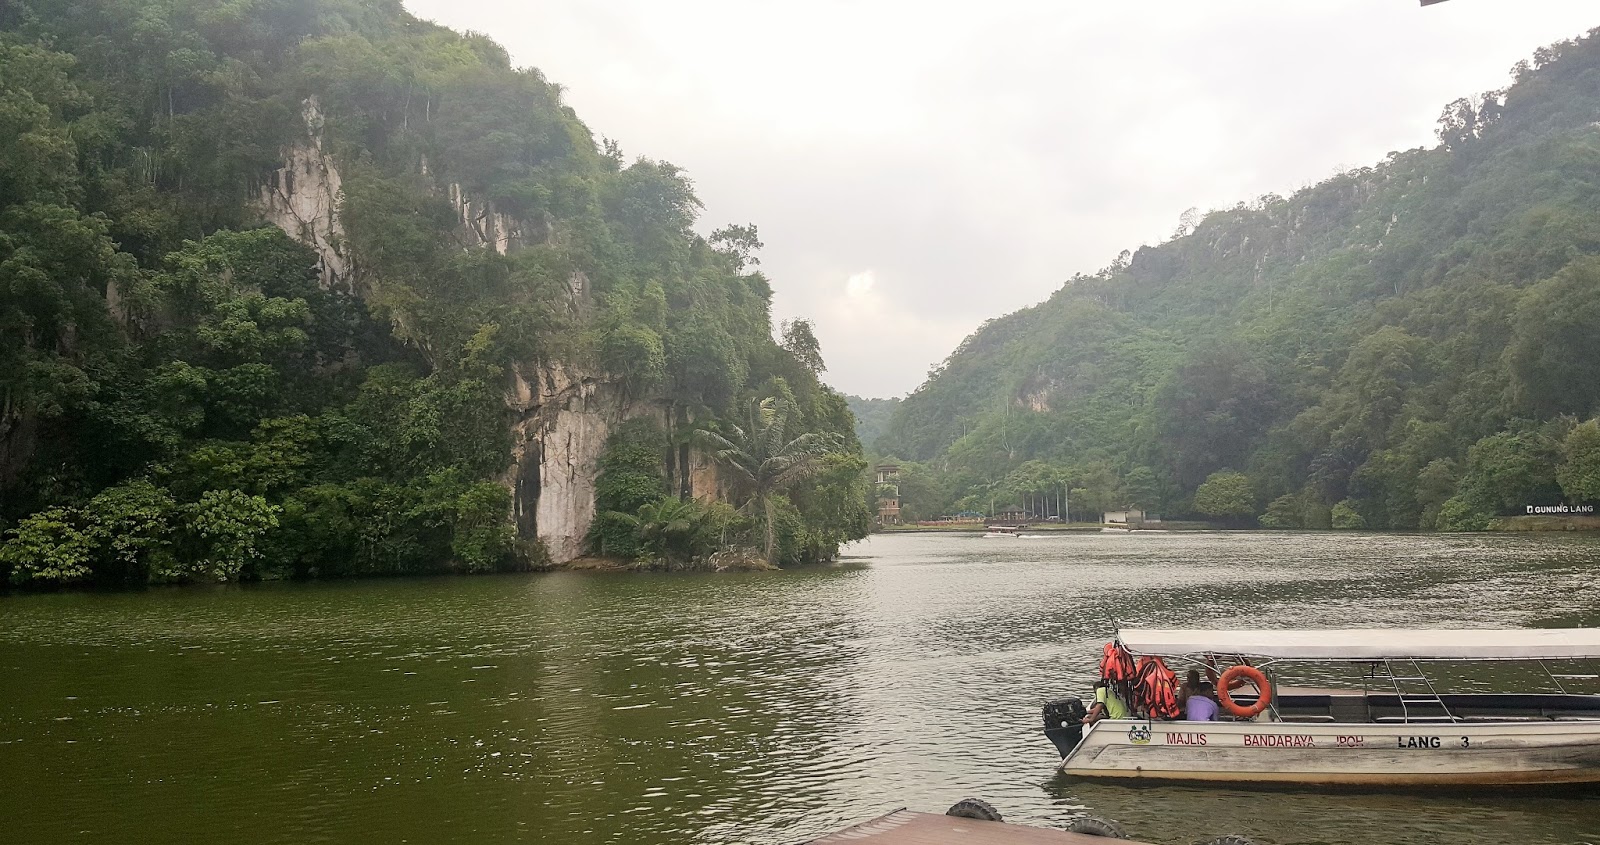 OUR WONDERFUL SIMPLE LIFE: Taman Rekreasi Gunung Lang Ipoh